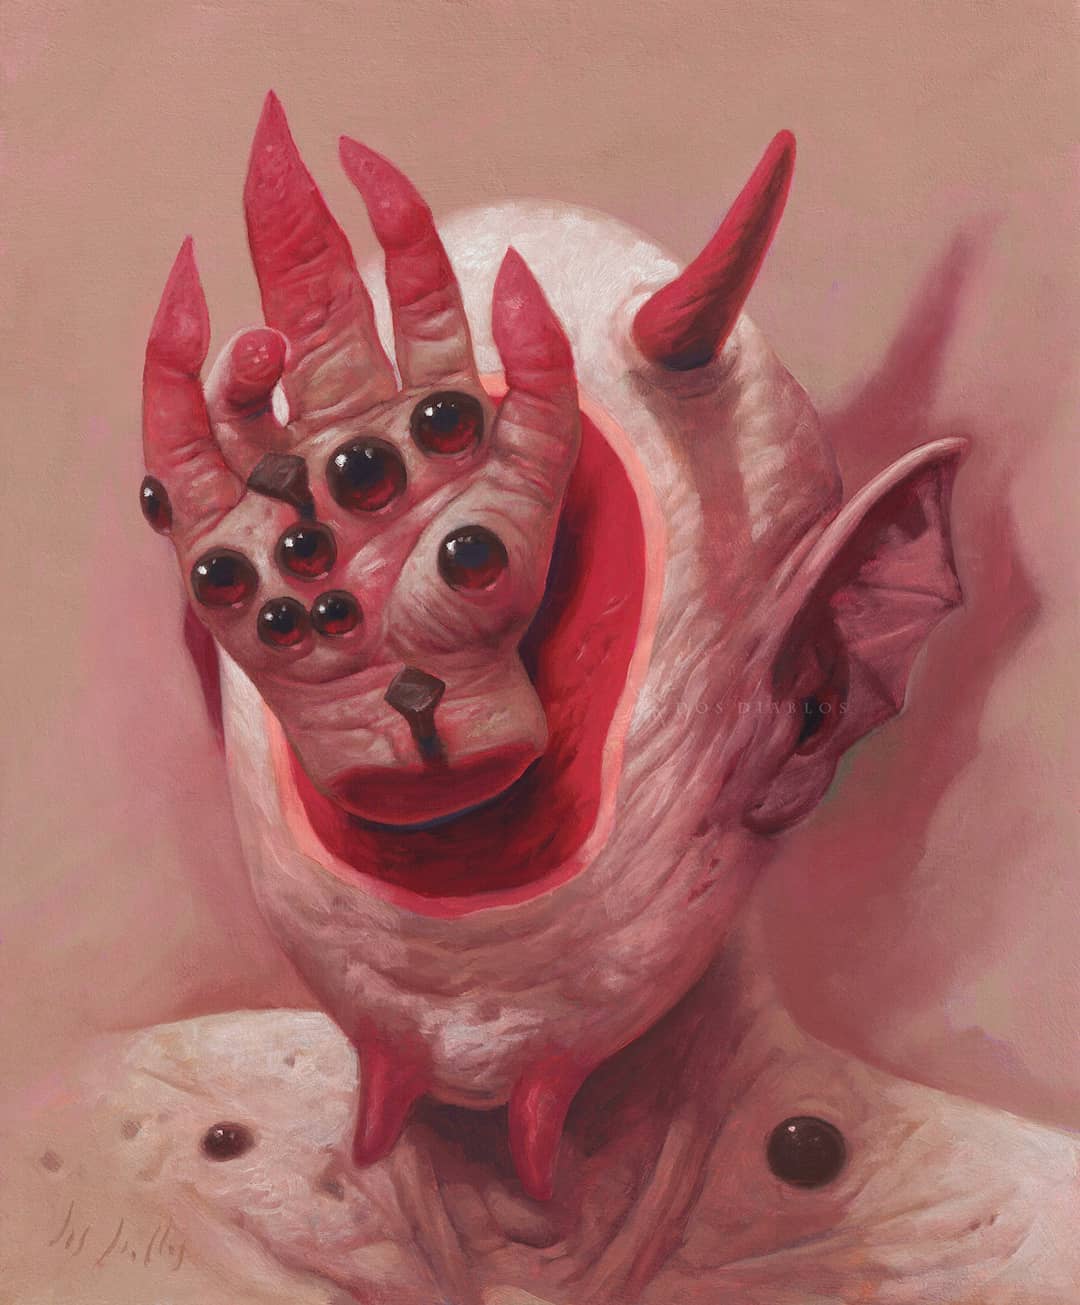 Portrait d'une créature surnaturelle diabolique.